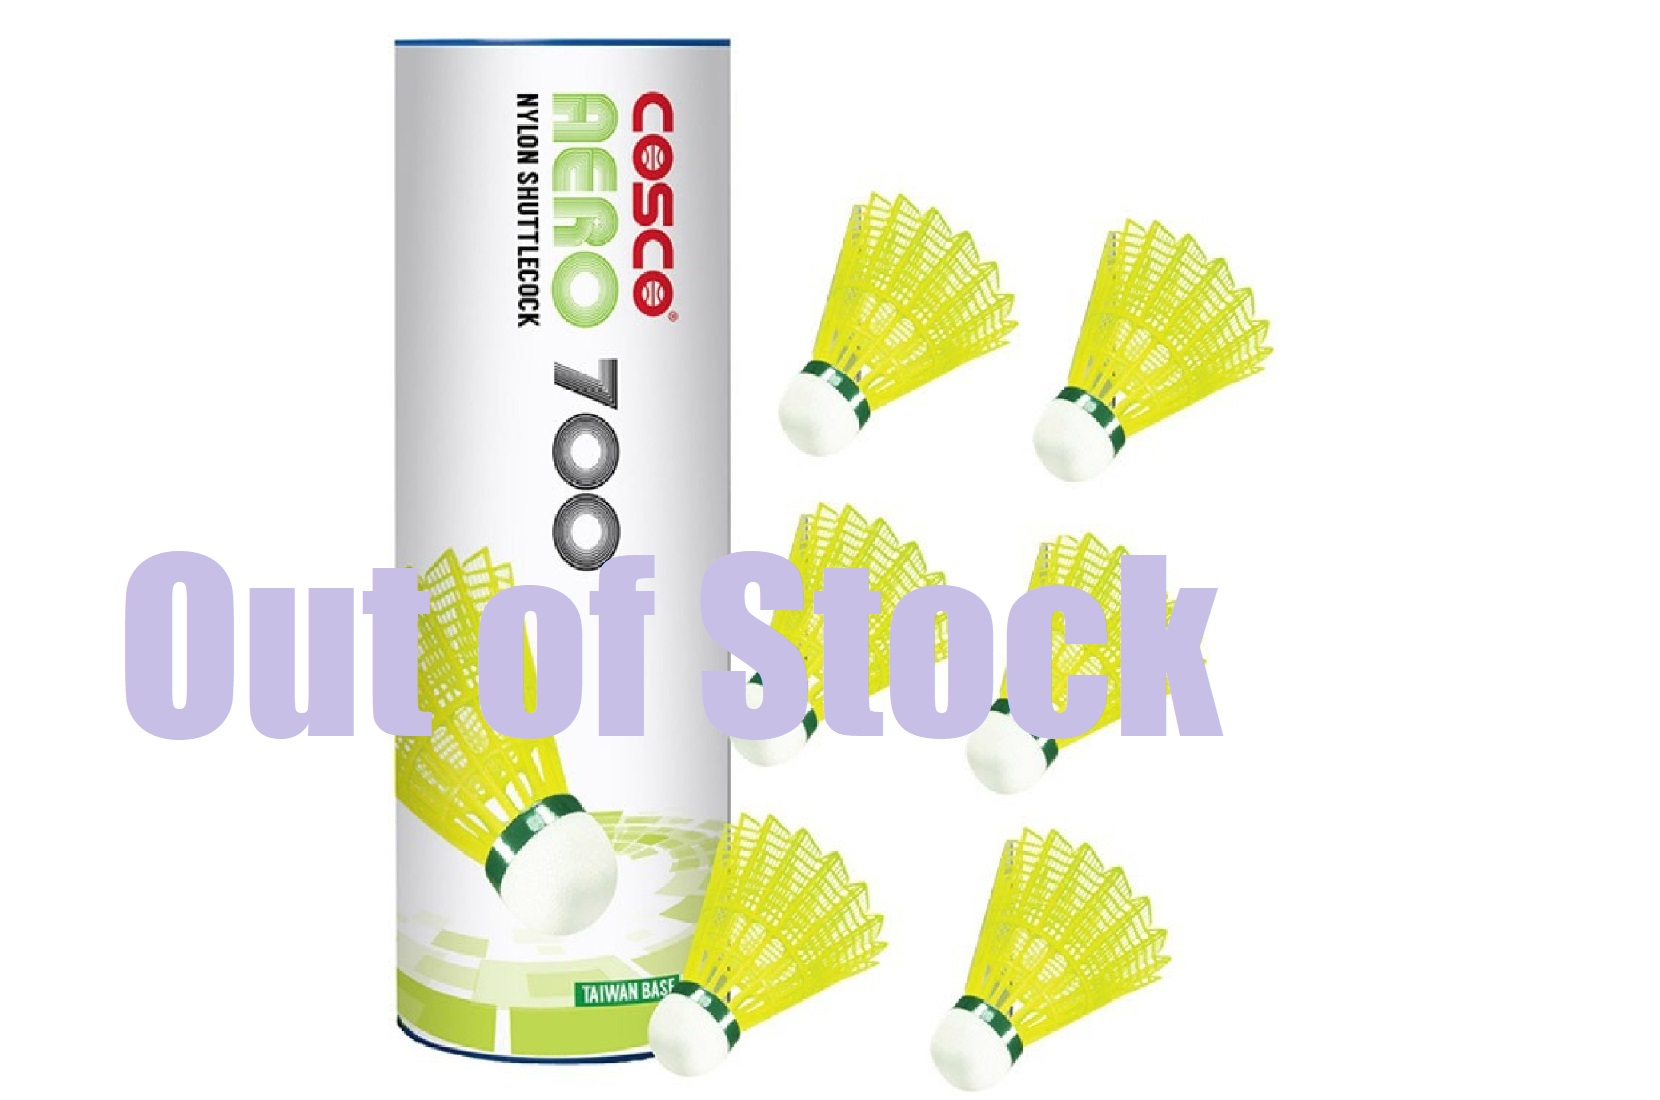 cosco 700 shuttlecock price